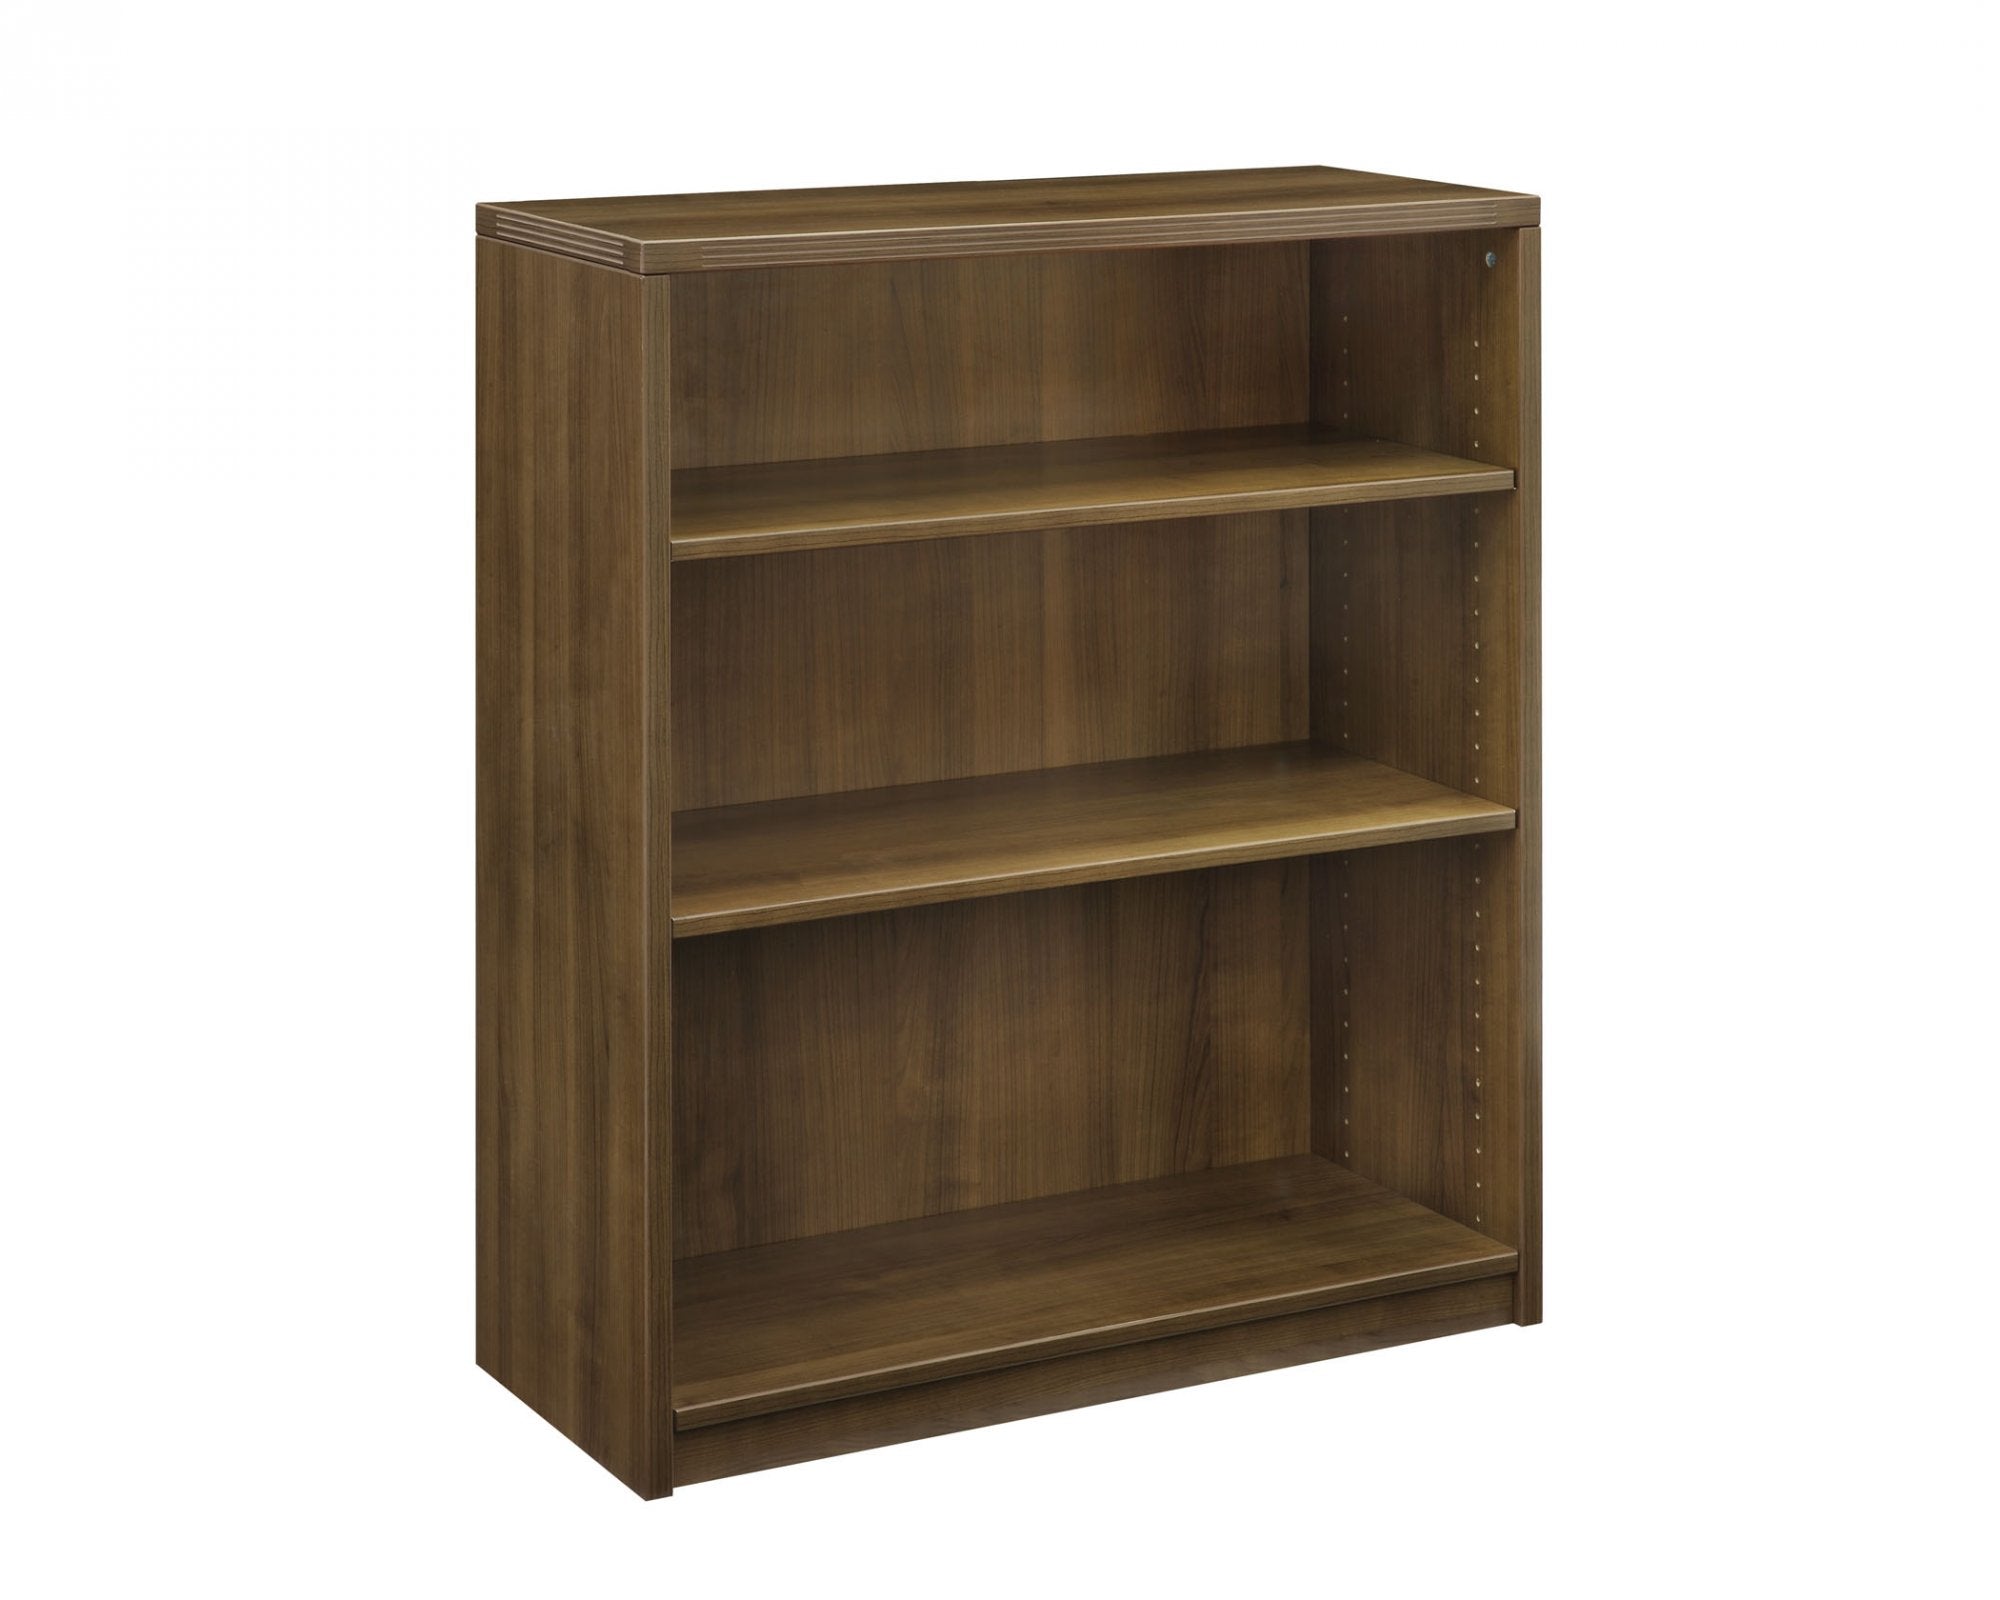 A828 - Amber Three Shelf Bookcase, by Cherryman